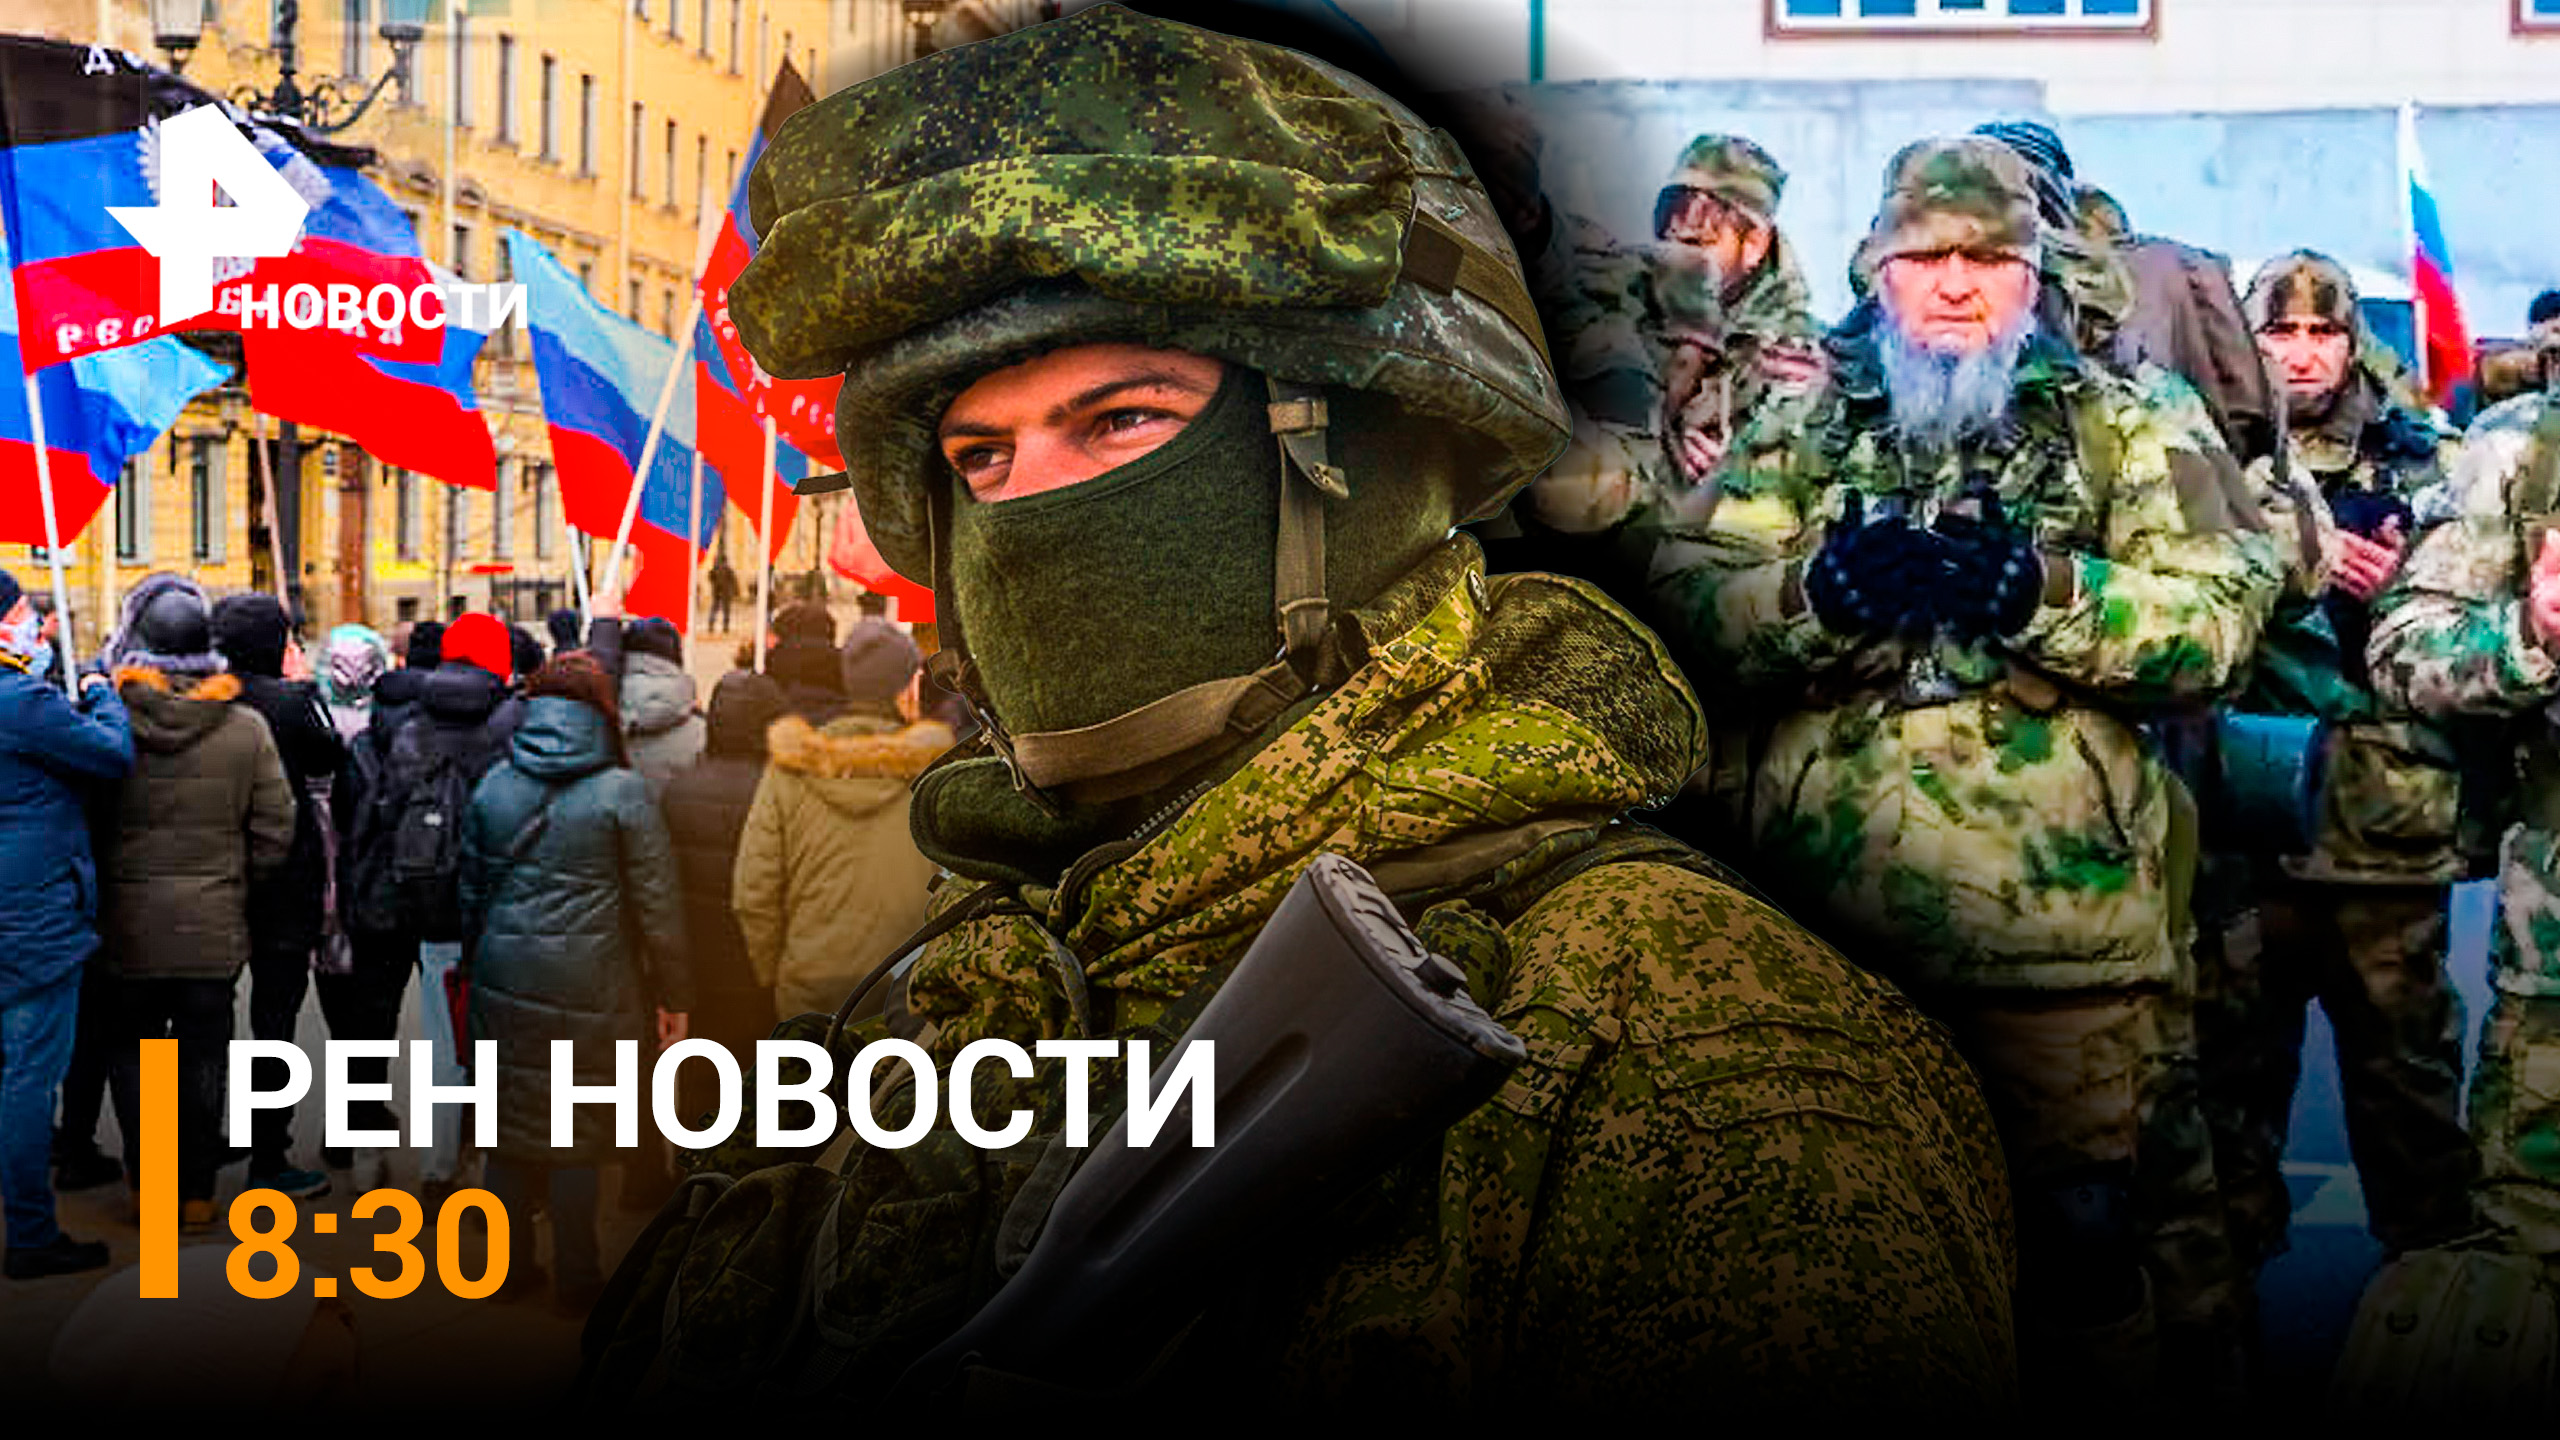 Добровольцы из Владивостока наводят страх на украинцев / РЕН Новости 8:30 от 23.09.2022